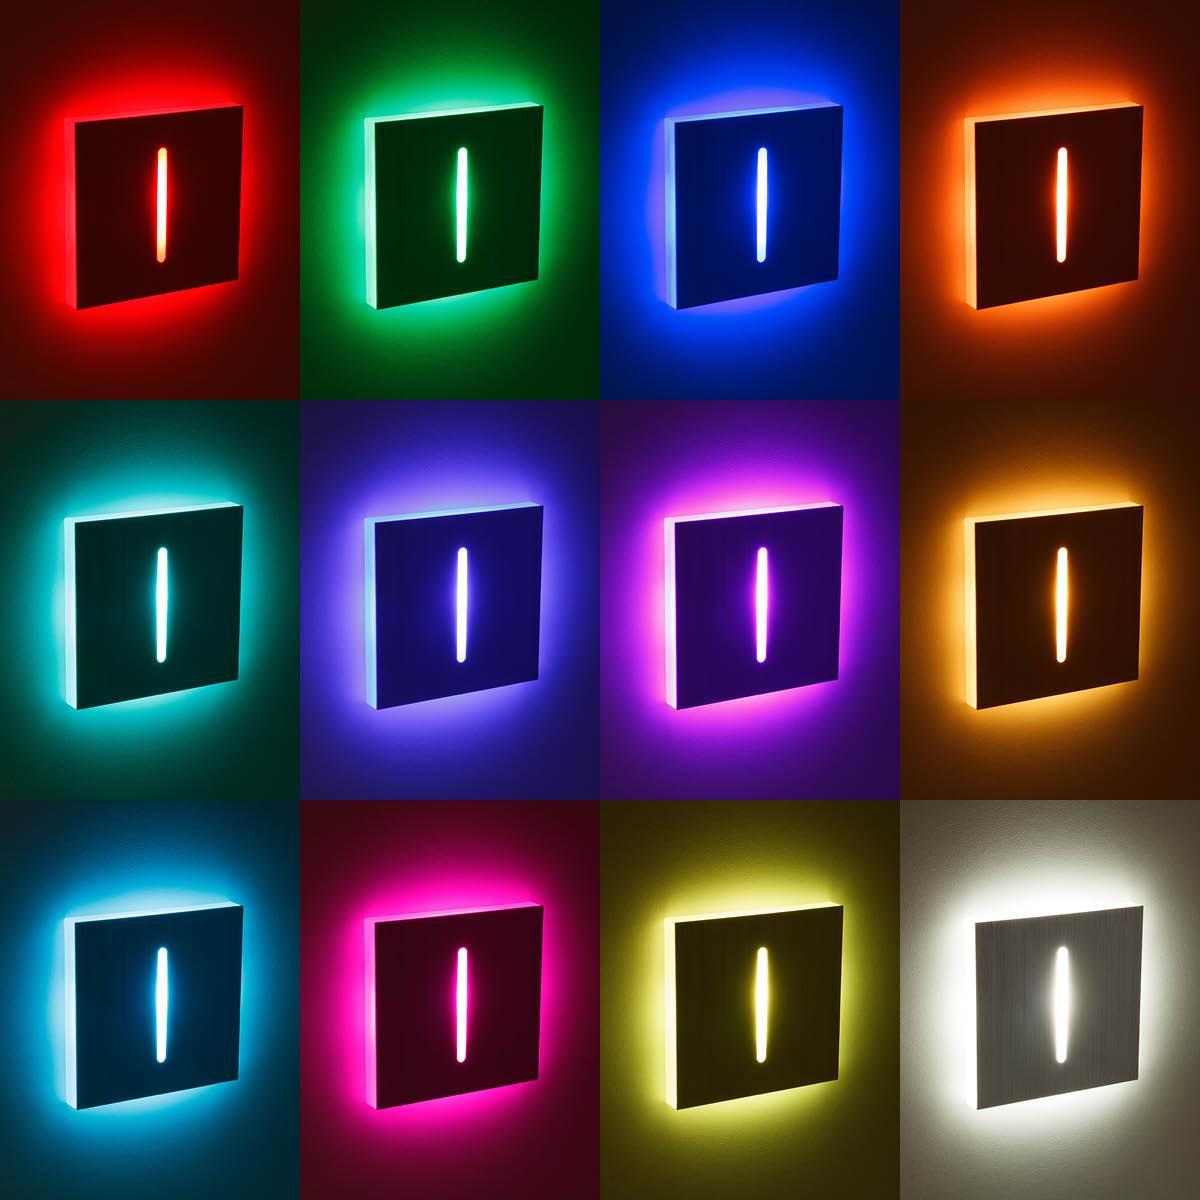 LED Treppenleuchte eckig Alu-gebürstet - Lichtfarbe: RGB Warmweiß 3W - Lichtaustritt: Fokus